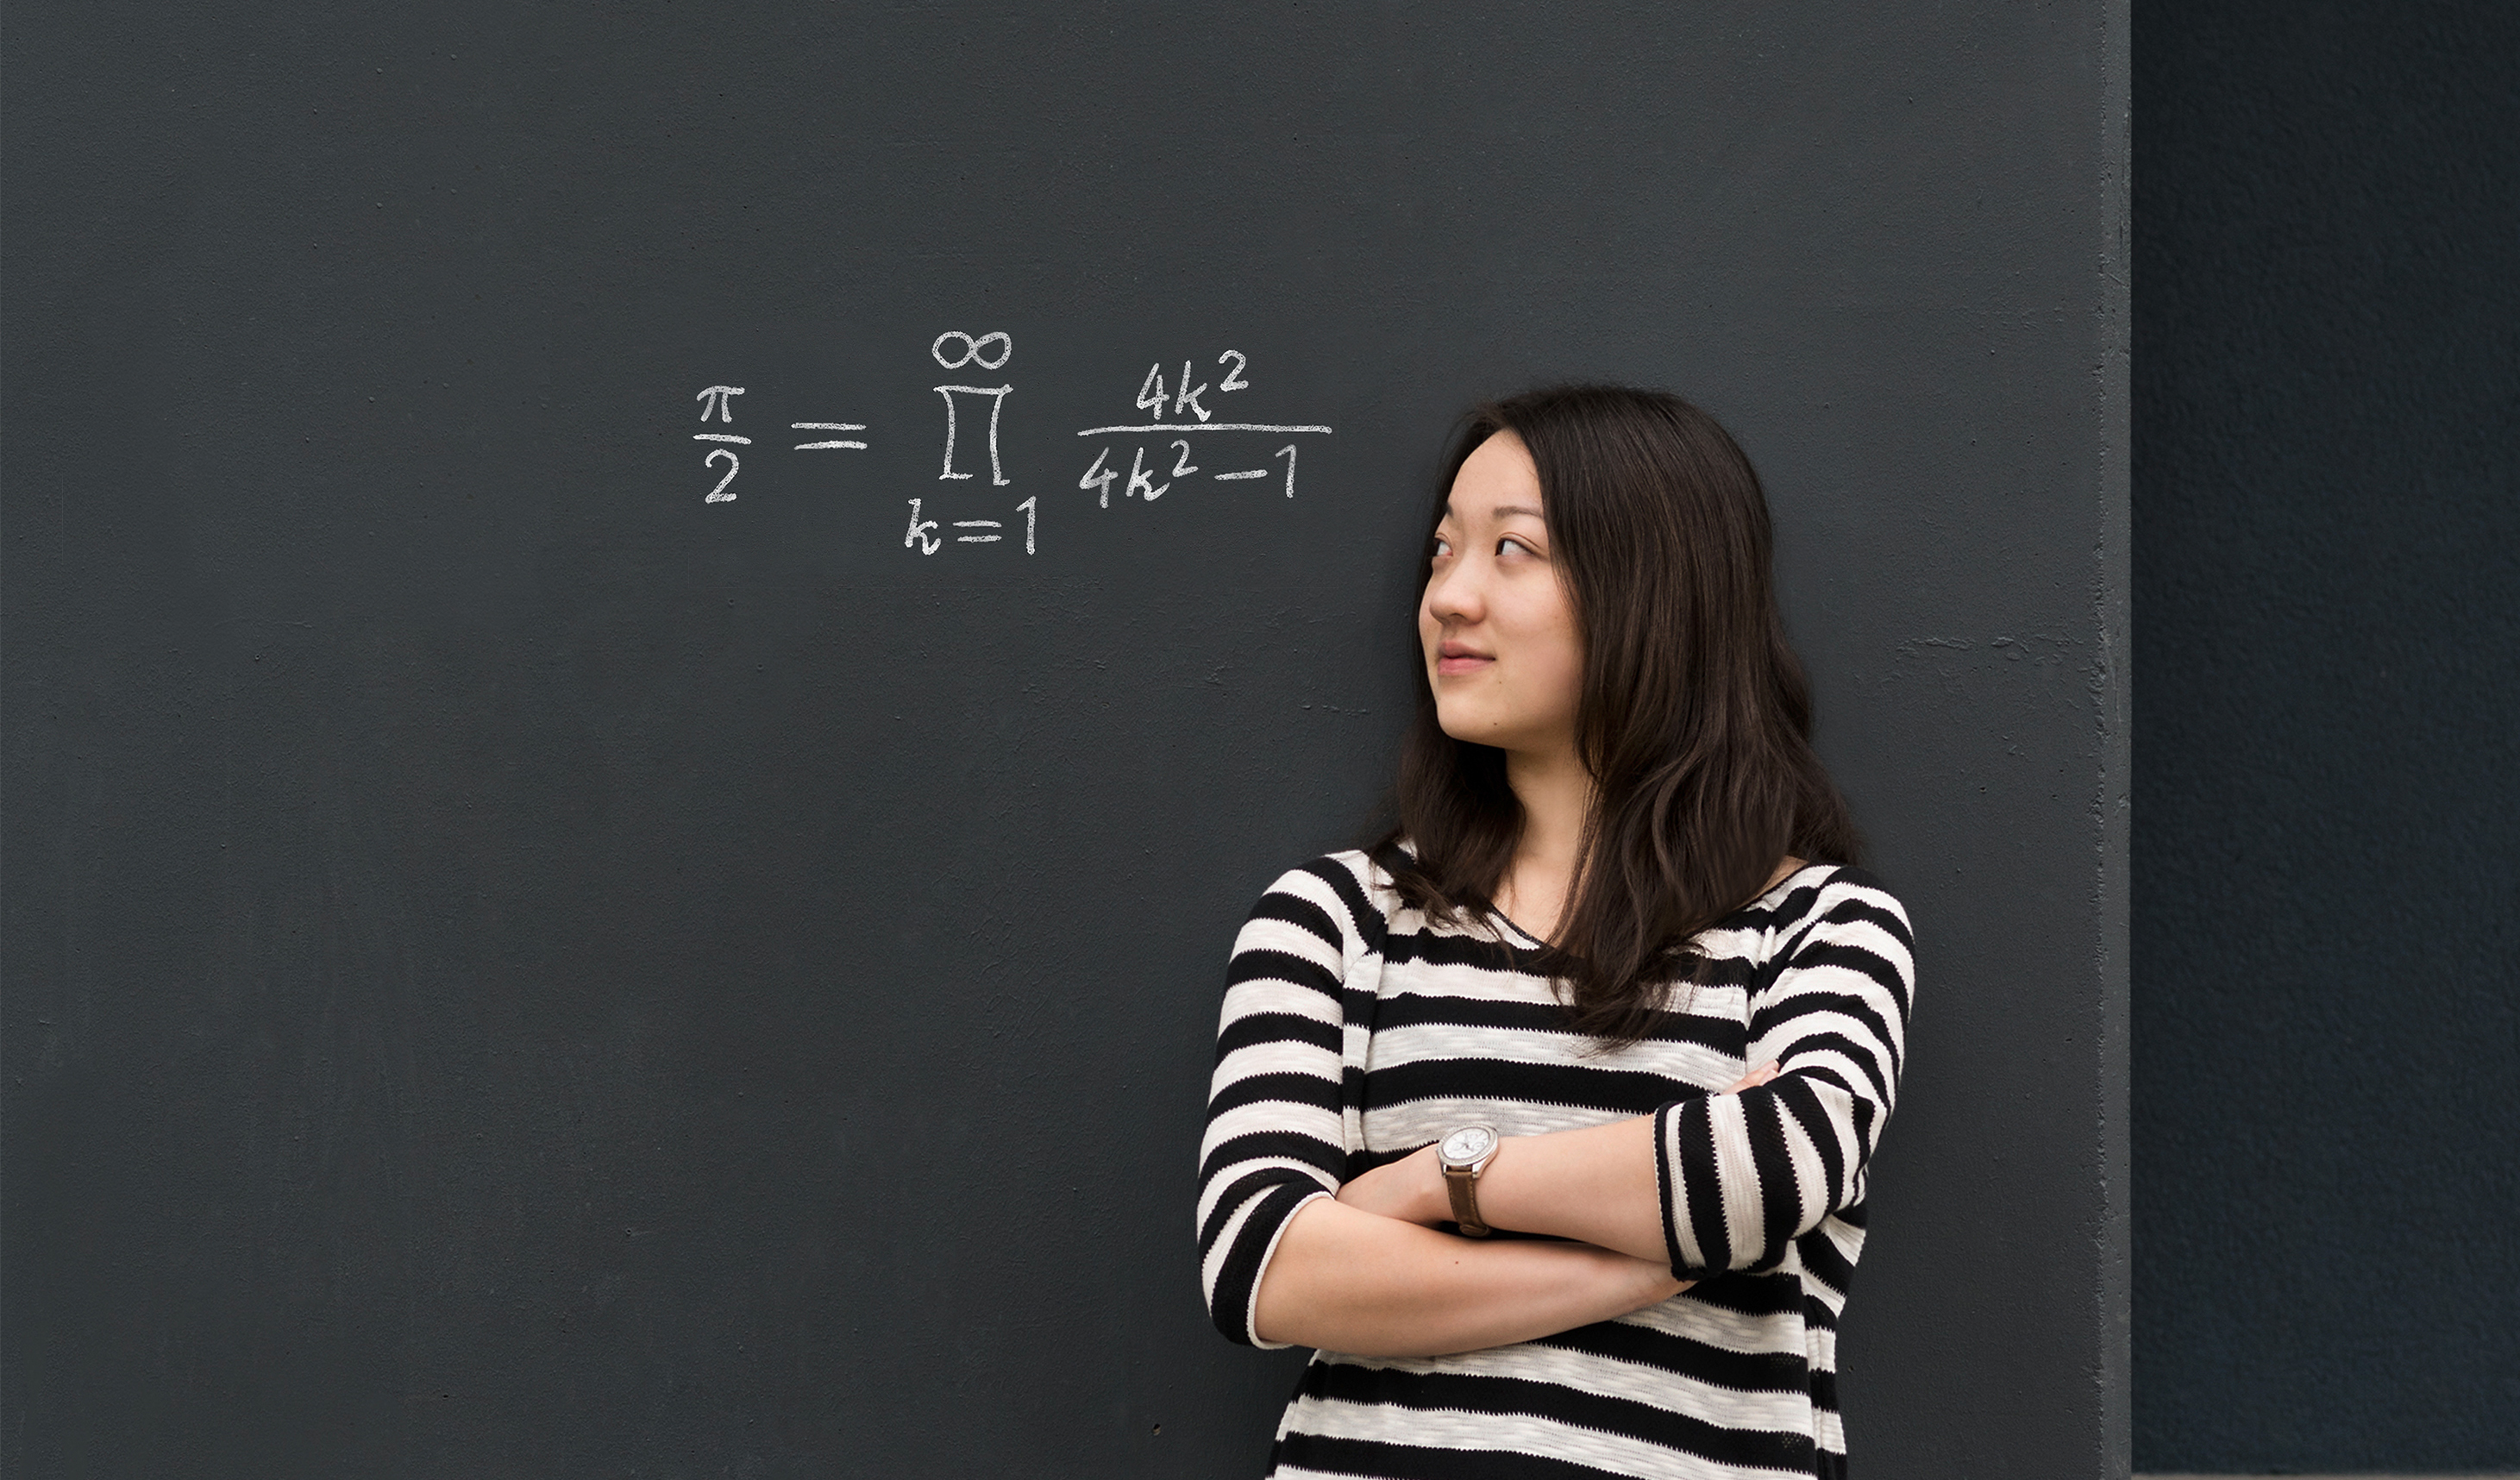 Junge Frau steht vor einer Tafel, auf der eine mathematische Formel steht.